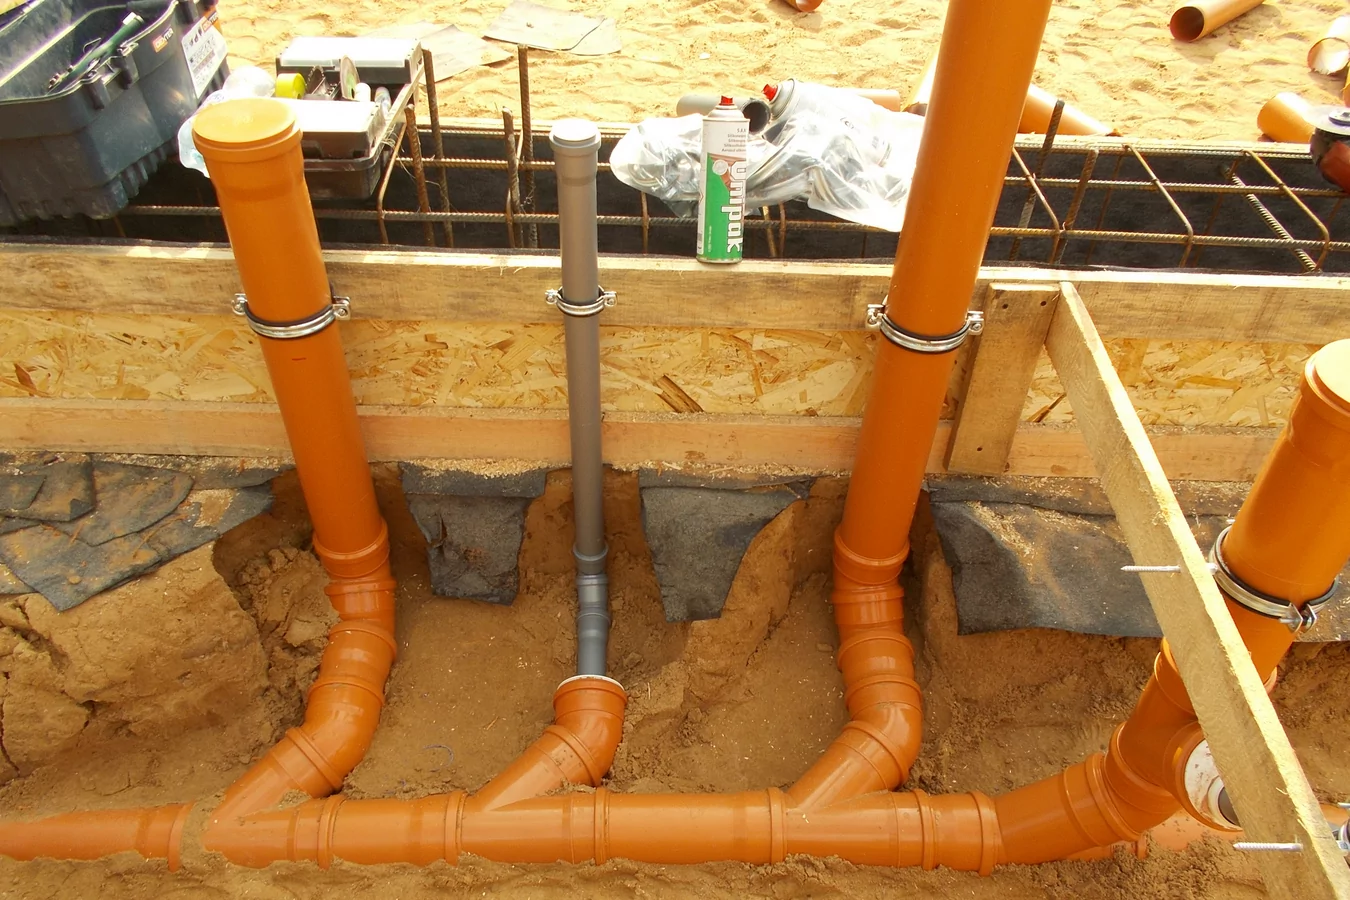 Трубы для наружной канализации пвх | группа полипластик